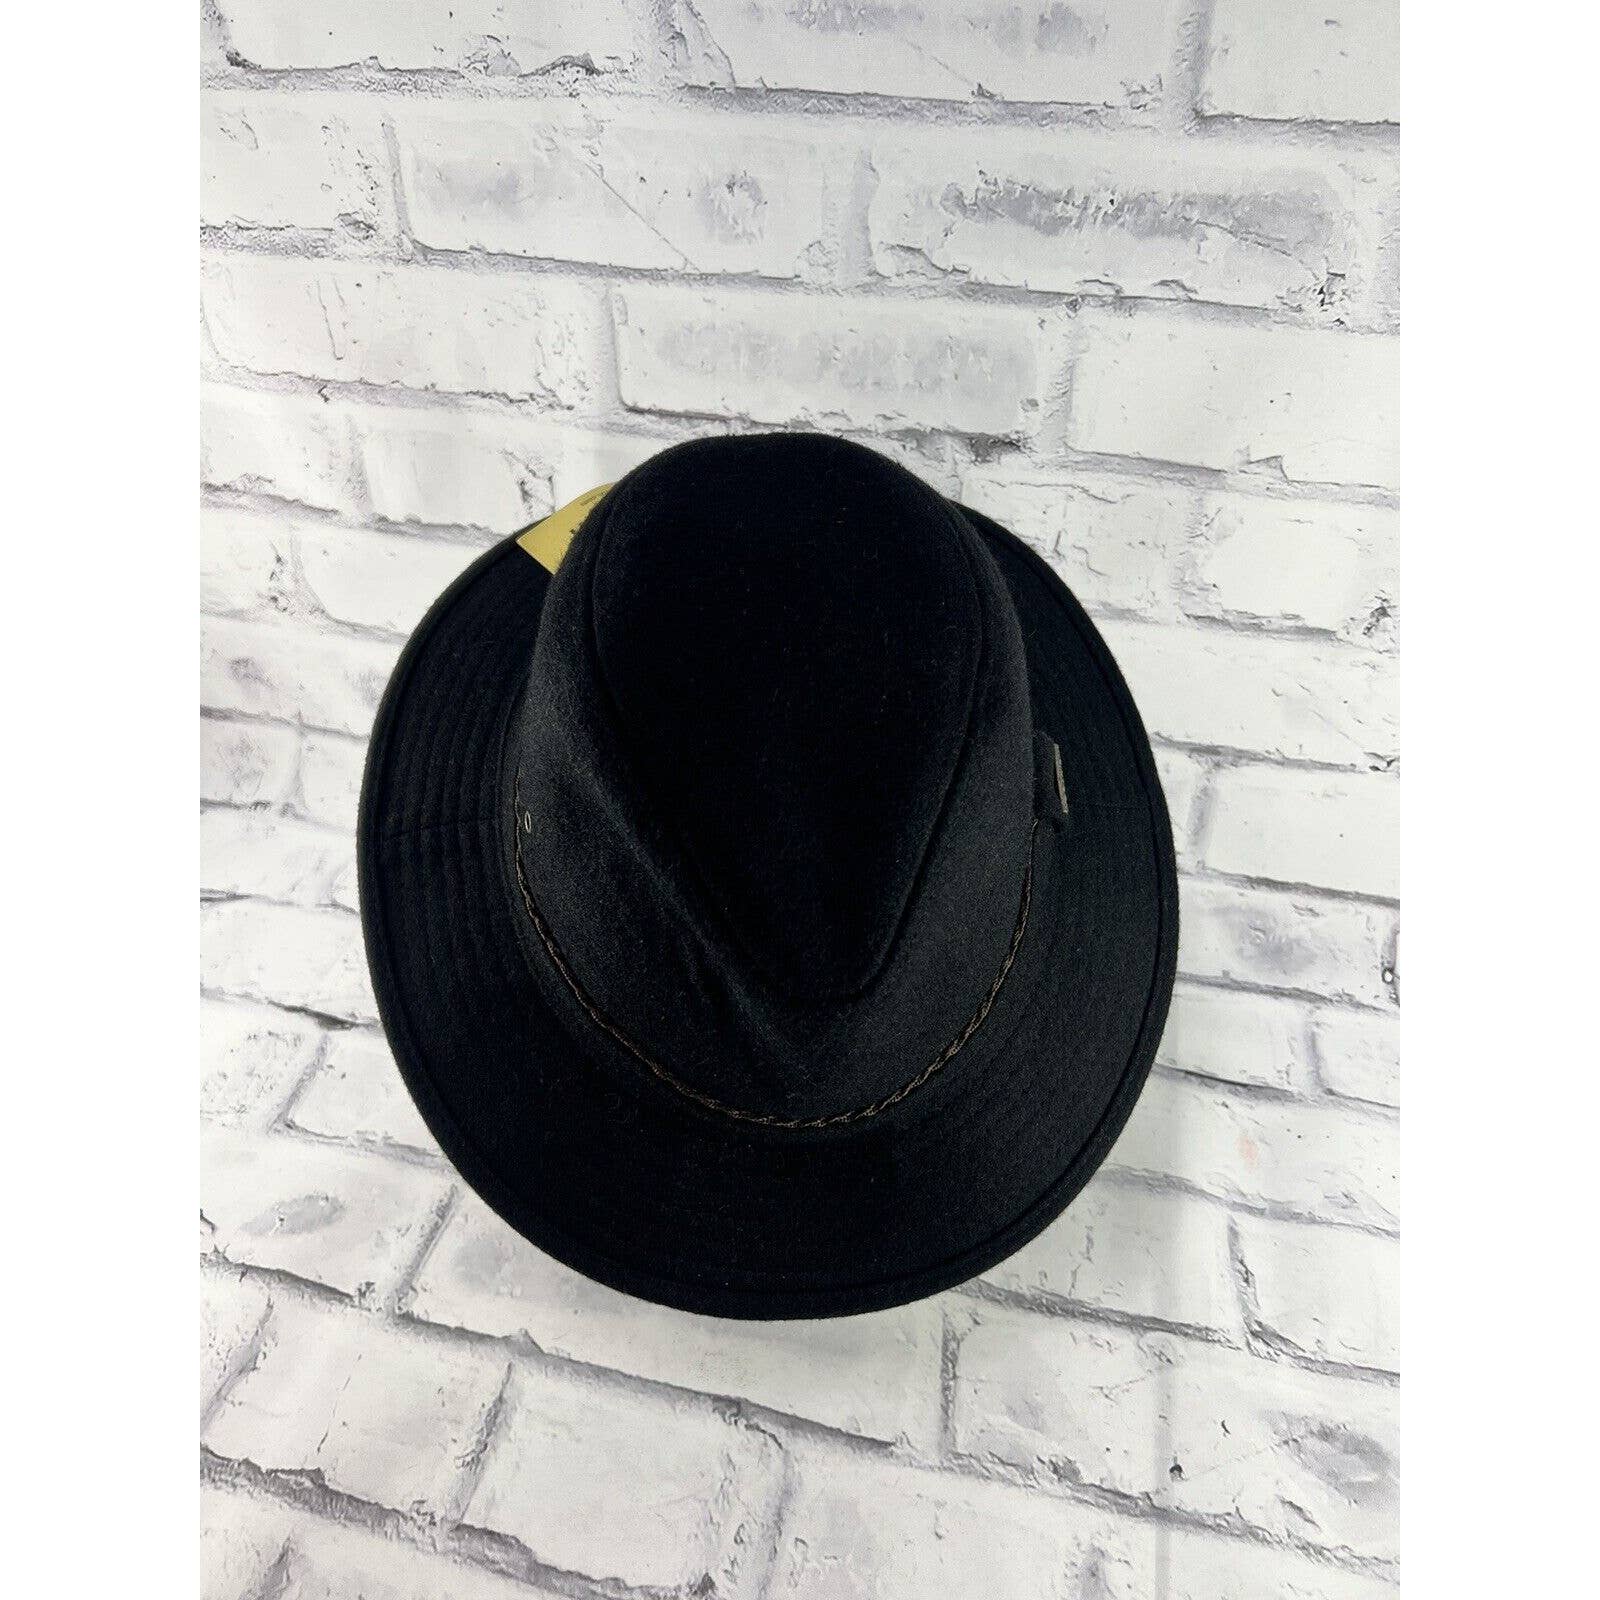 Woolrich Wool Men’s Cowboy Safari Hat Black Western 3.5” Brim Travelers